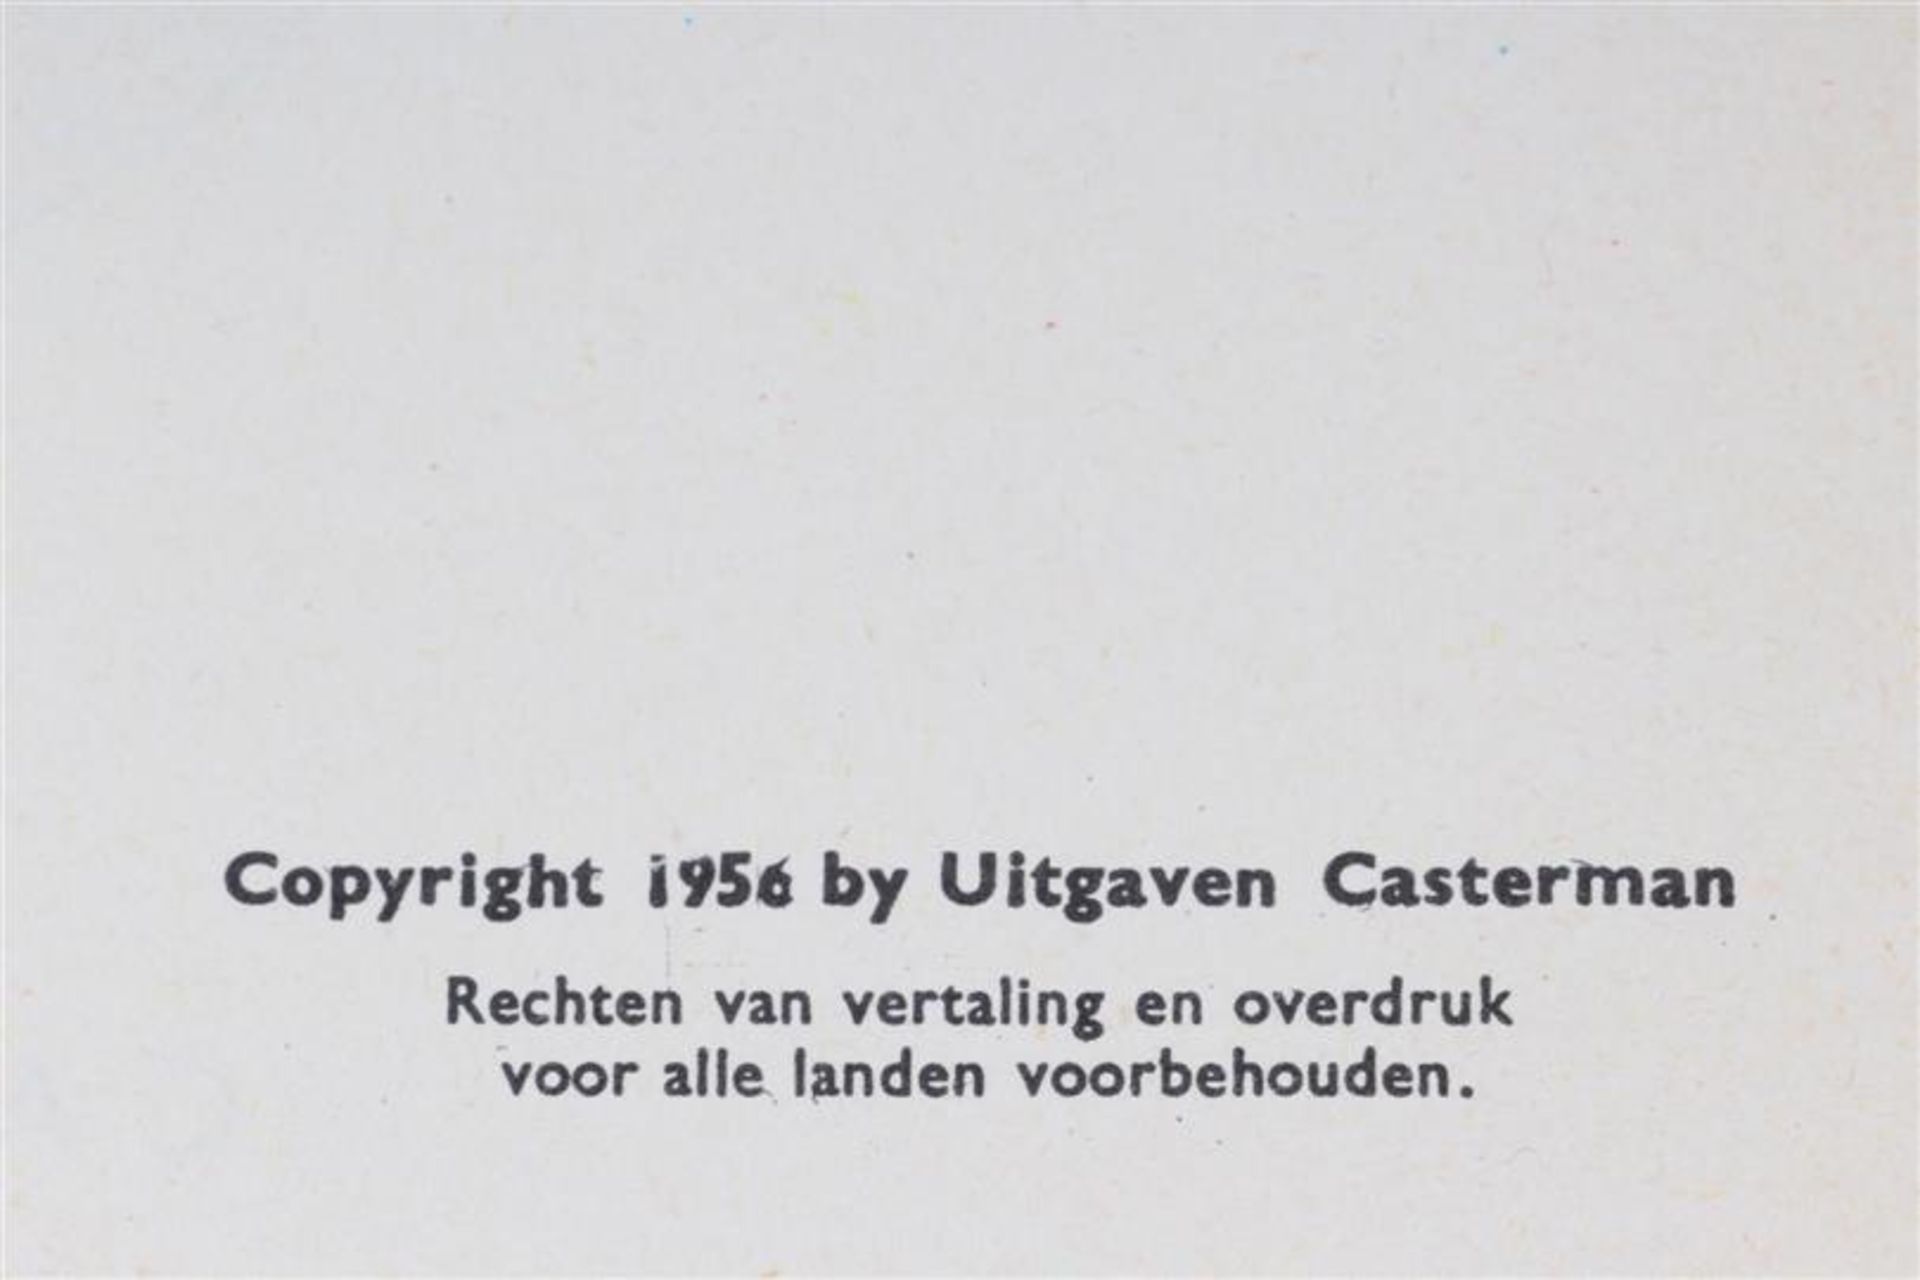 De avonturen van Kuifje, Hergé, uitgeverij Casterman, 7 hardcovers en drie softcovers. - Bild 15 aus 17